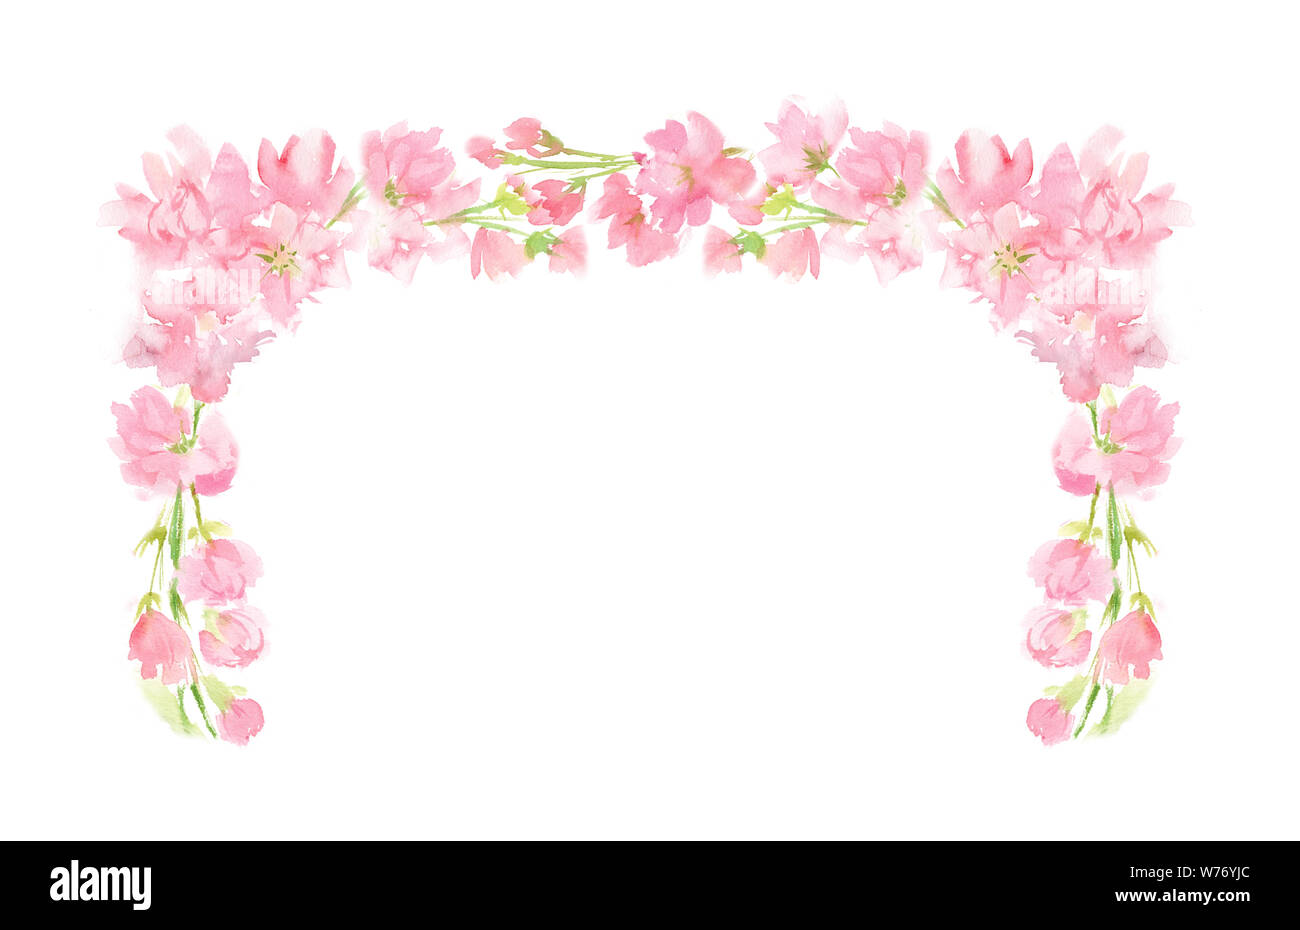 Rosa floreale astratta acquerello corona rettangolare con colori pastello fiori e foglie dipinte a mano in un angolo quadrato la disposizione di testo Messaggio di saluto Foto Stock